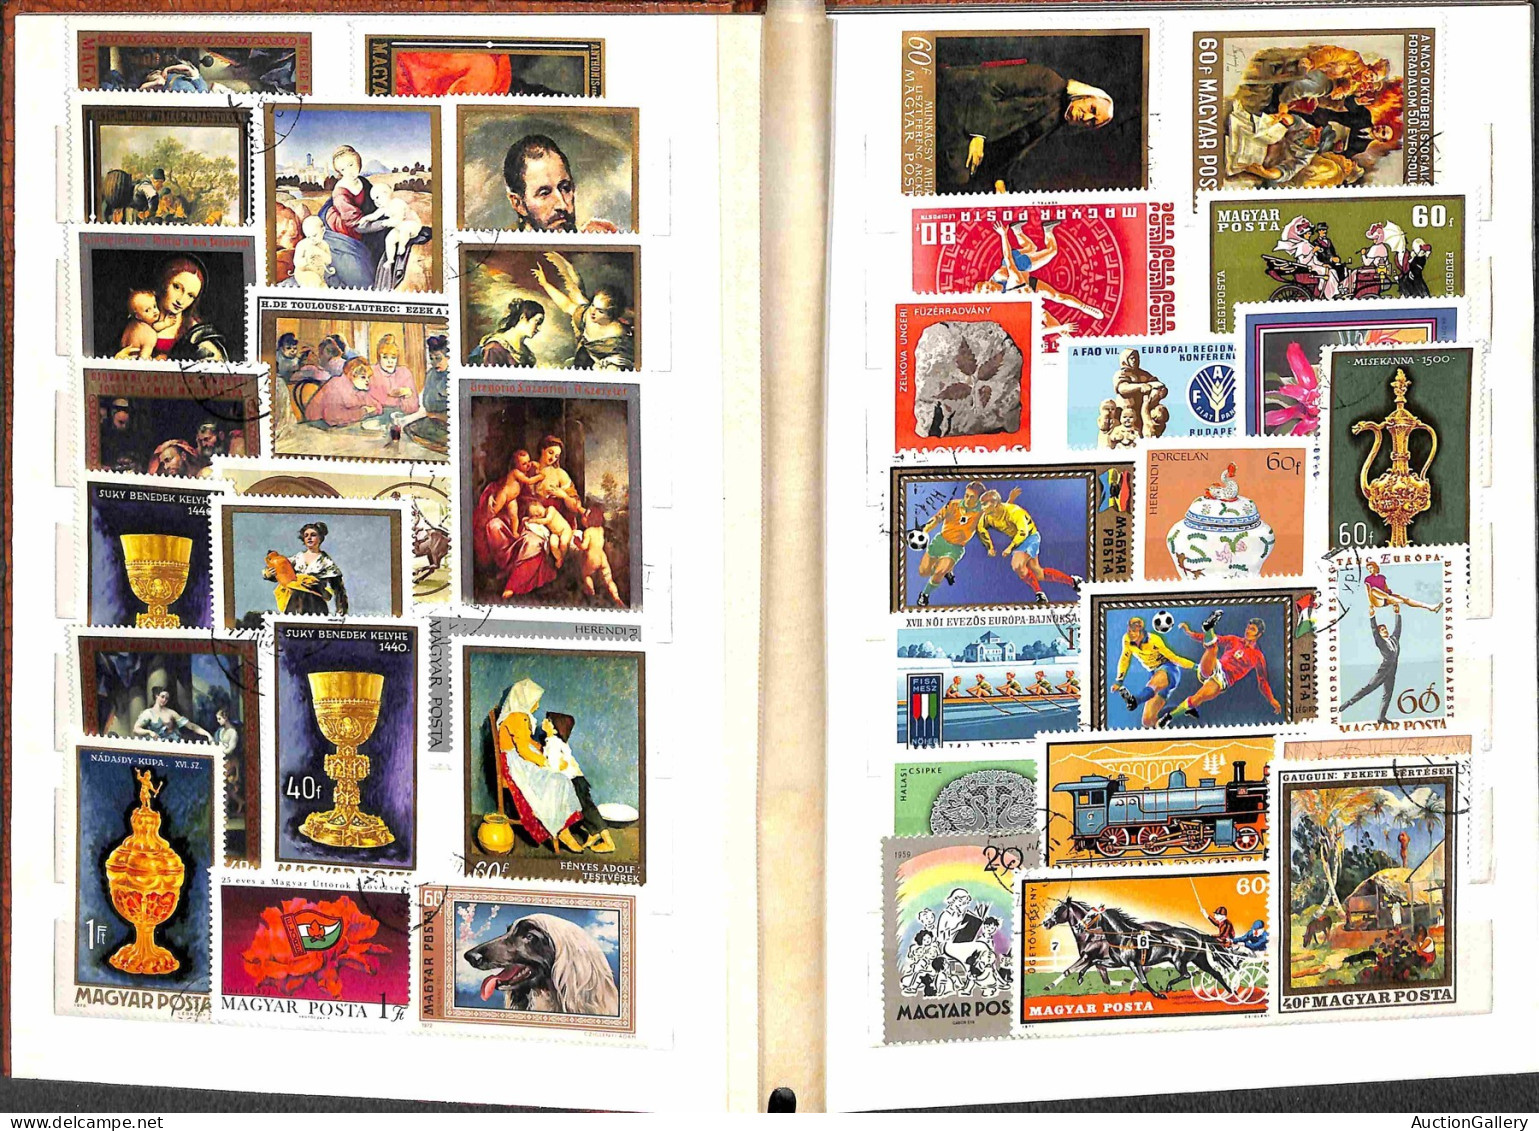 Lotti&Collezioni - Europa&Oltremare - MONDIALE - Accumulazione di migliaia di francobolli nuovi e usati montati in 8 pic